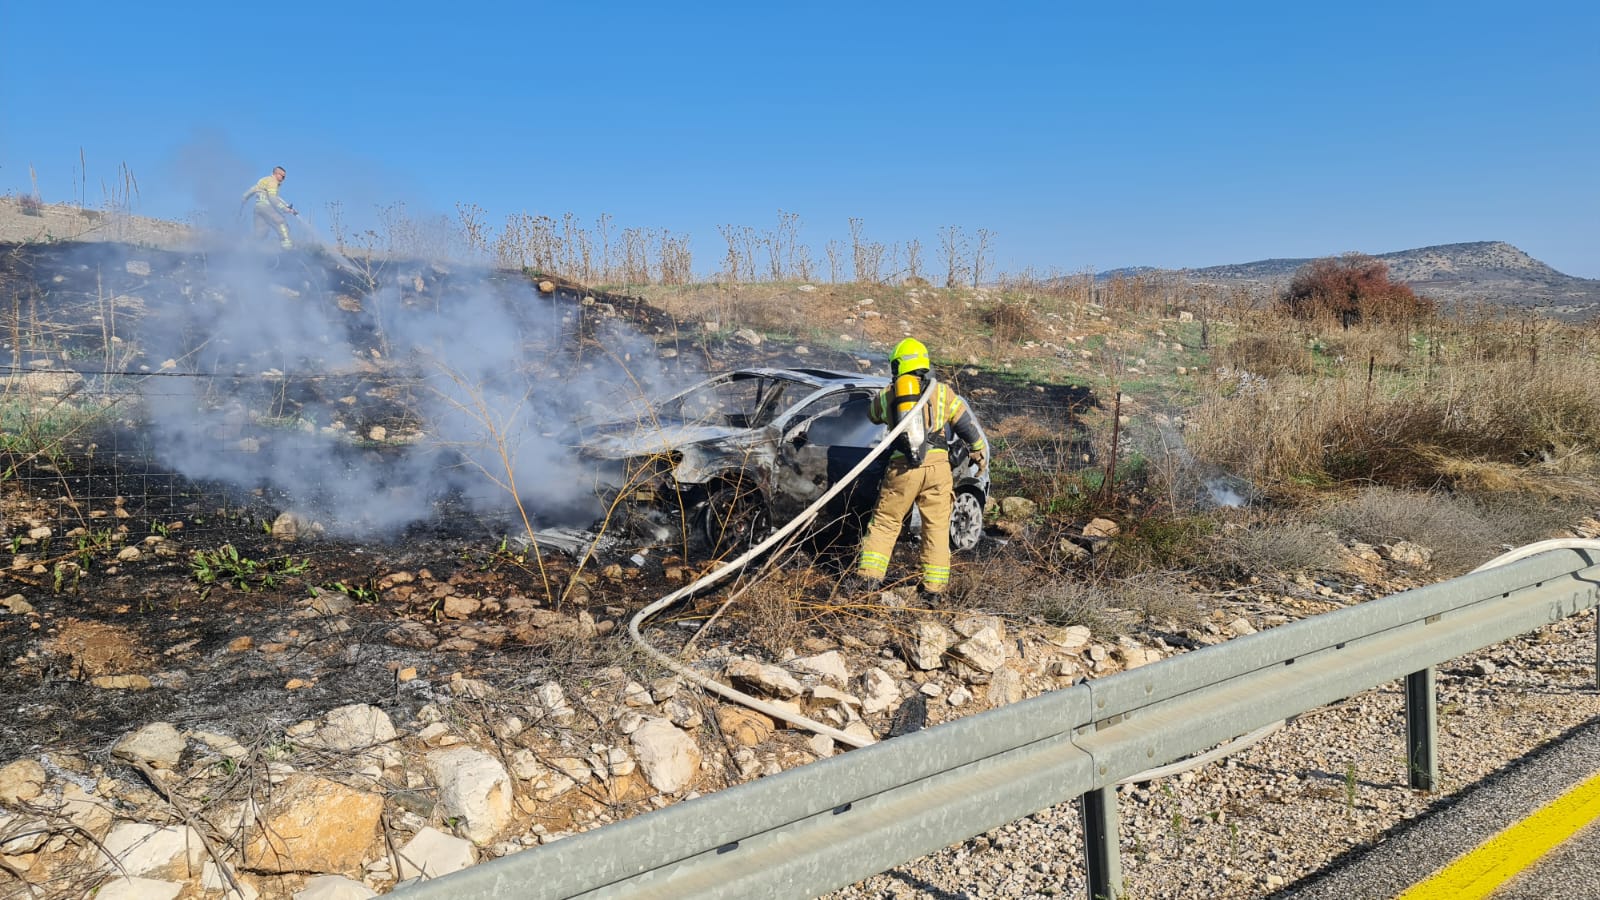 שריפת רכב ושדה קוצים בכביש 899 סמוך מלכיה: לוחמי האש השתלטו על השריפה